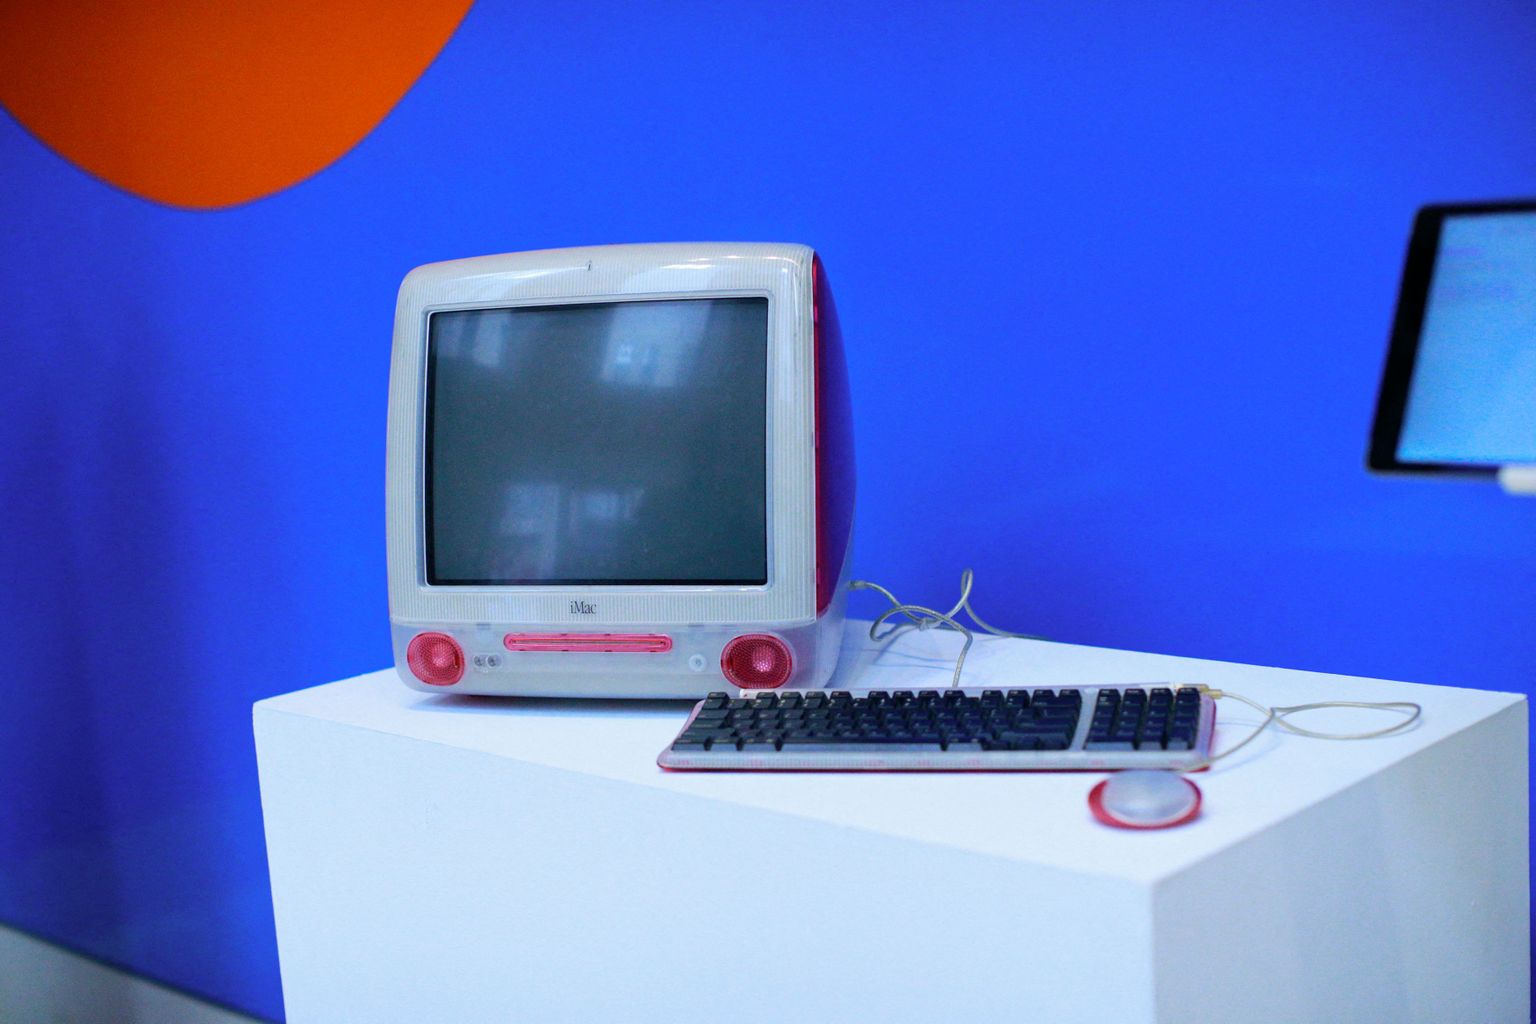 Personālais dators, kuru interneta bezmaksas enciklopēdijas Vikipēdijas dibinātājs Džimijs Veilss izmantoja tās programmēšanai pirms 20 gadiem.